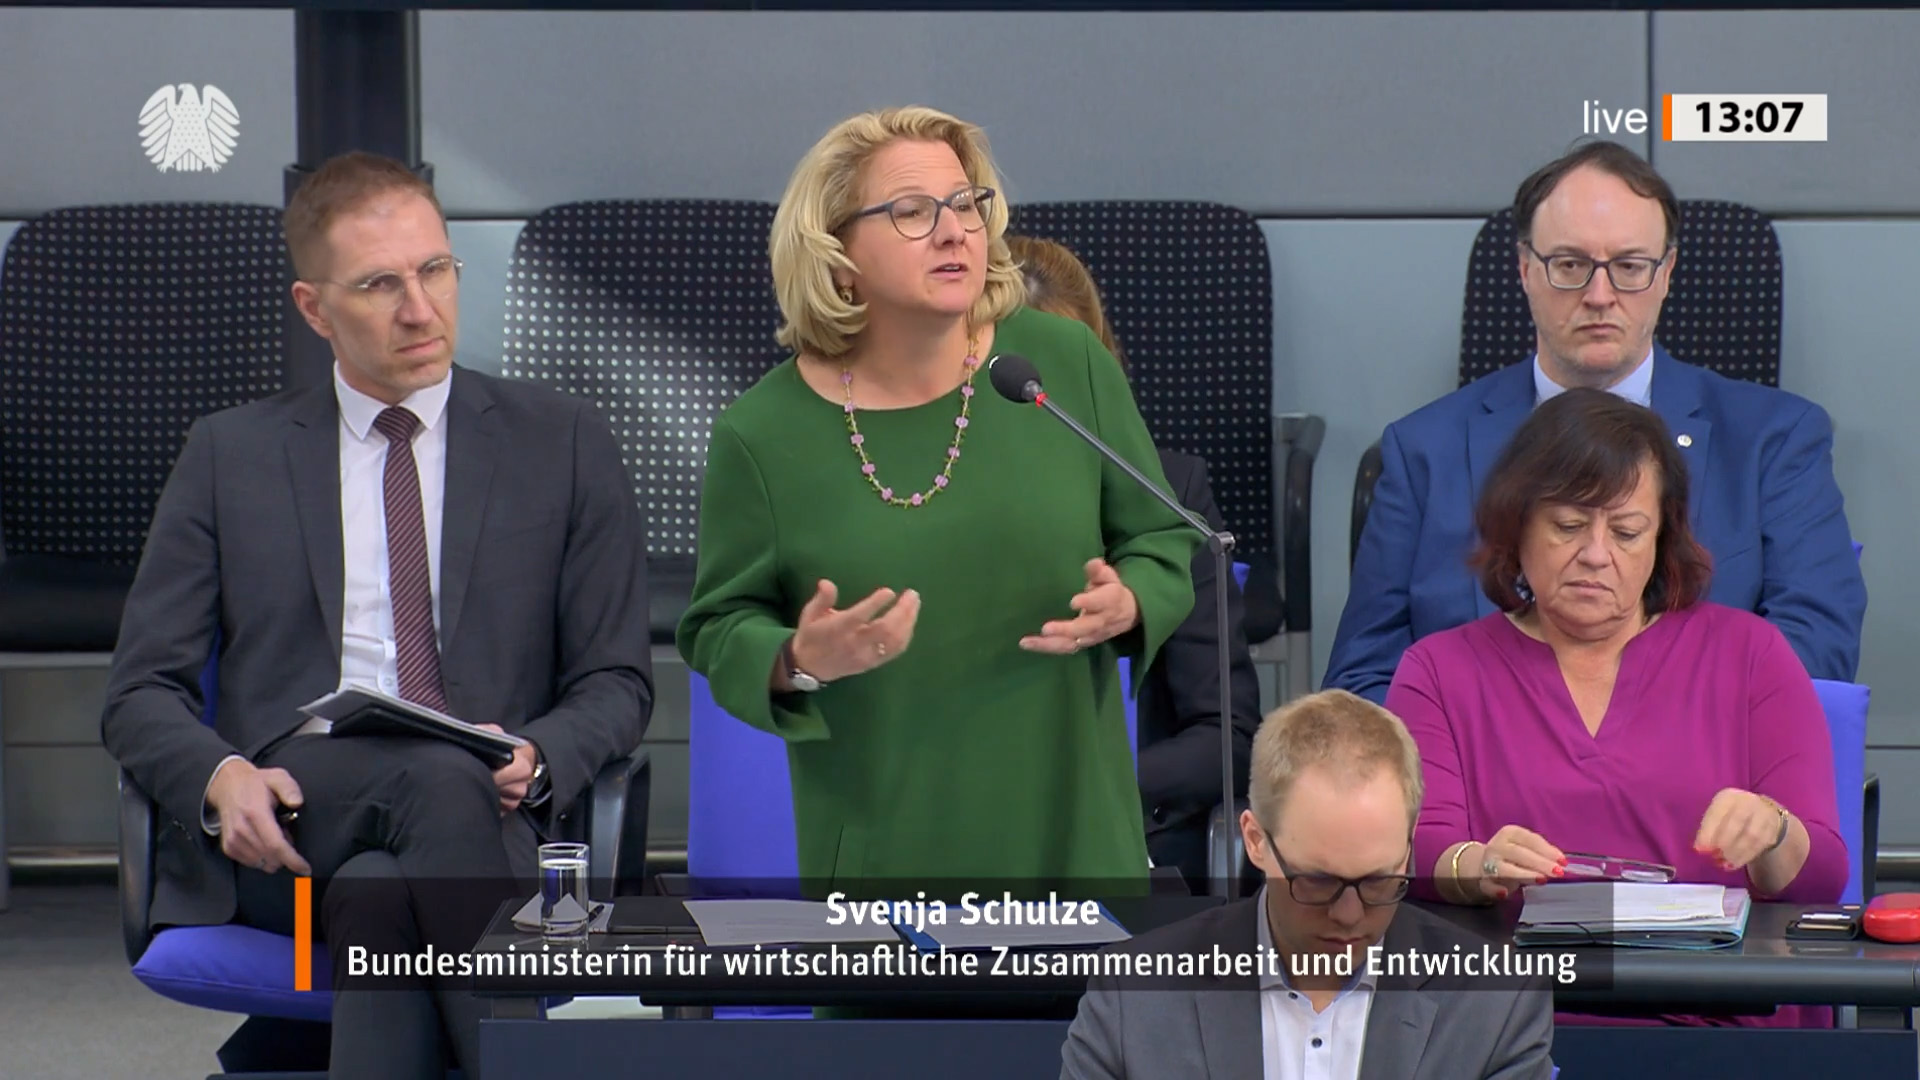 Bundesministerin Svenja Schulze bei ihrer Rede im Bundestag im Rahmen der Regierungsbefragung am 15. März in Berlin 